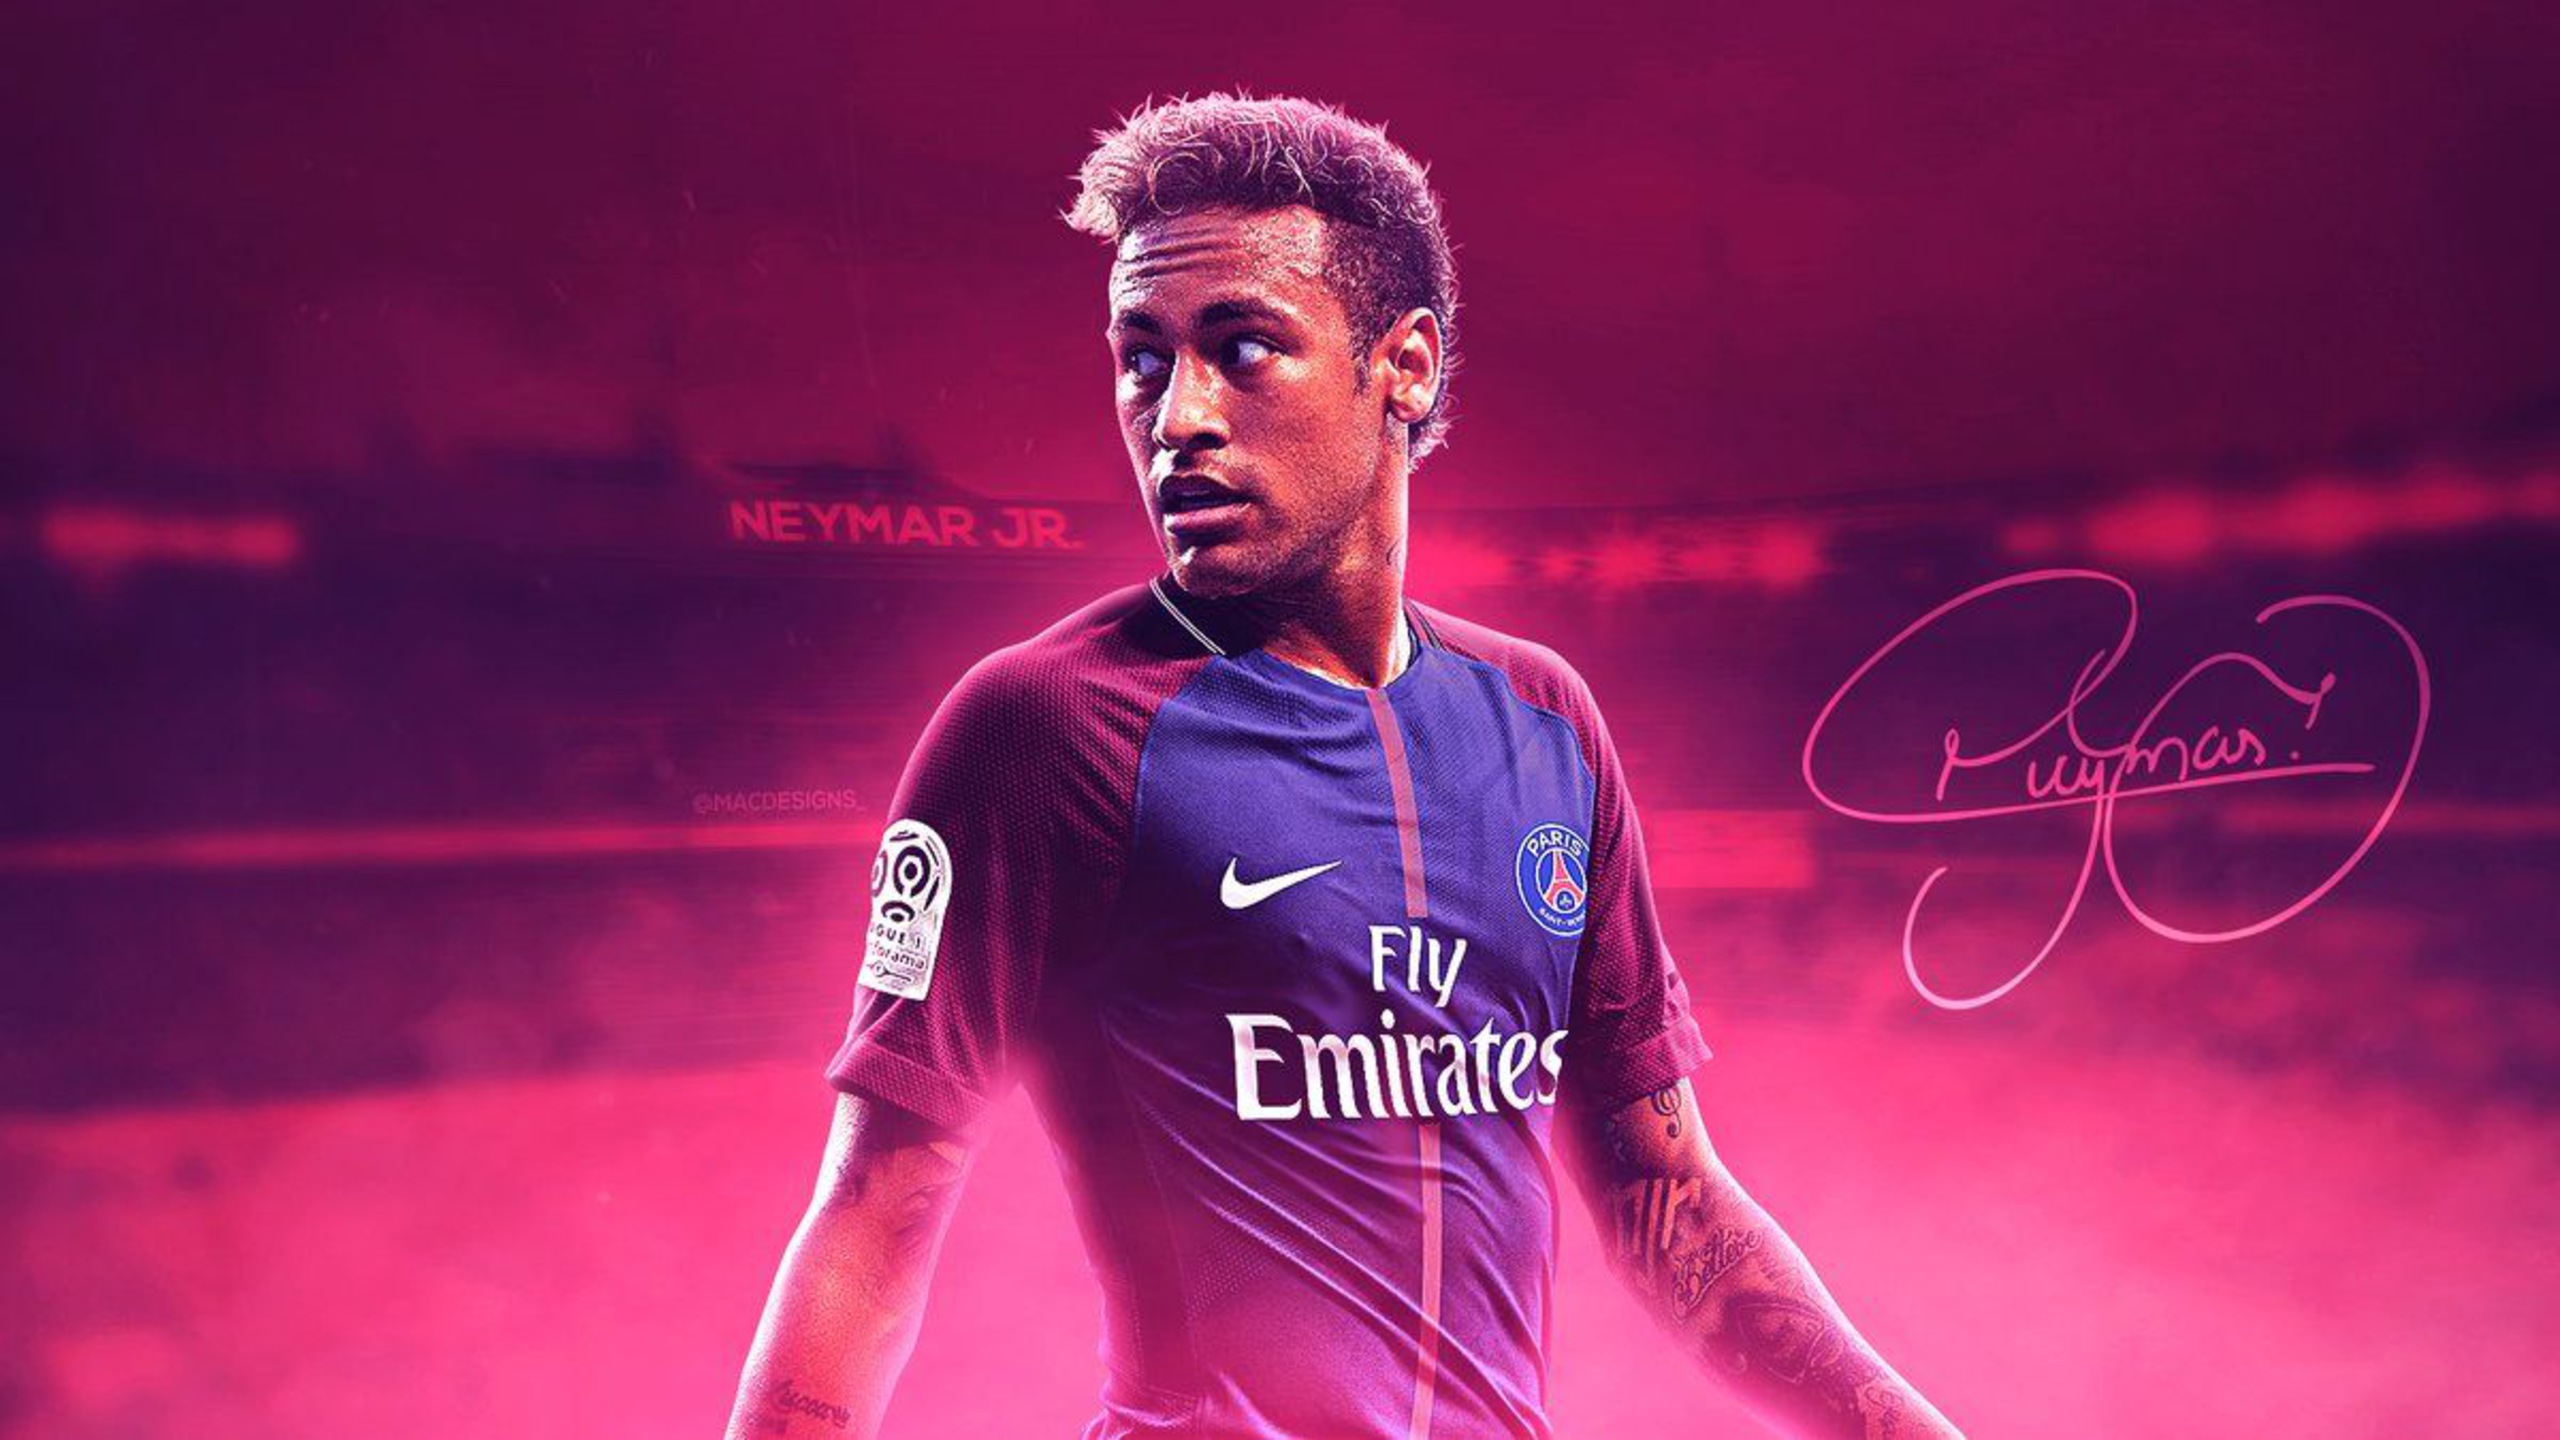 Neymar HD Wallpapers New Tab Theme   Sports Fan Tab